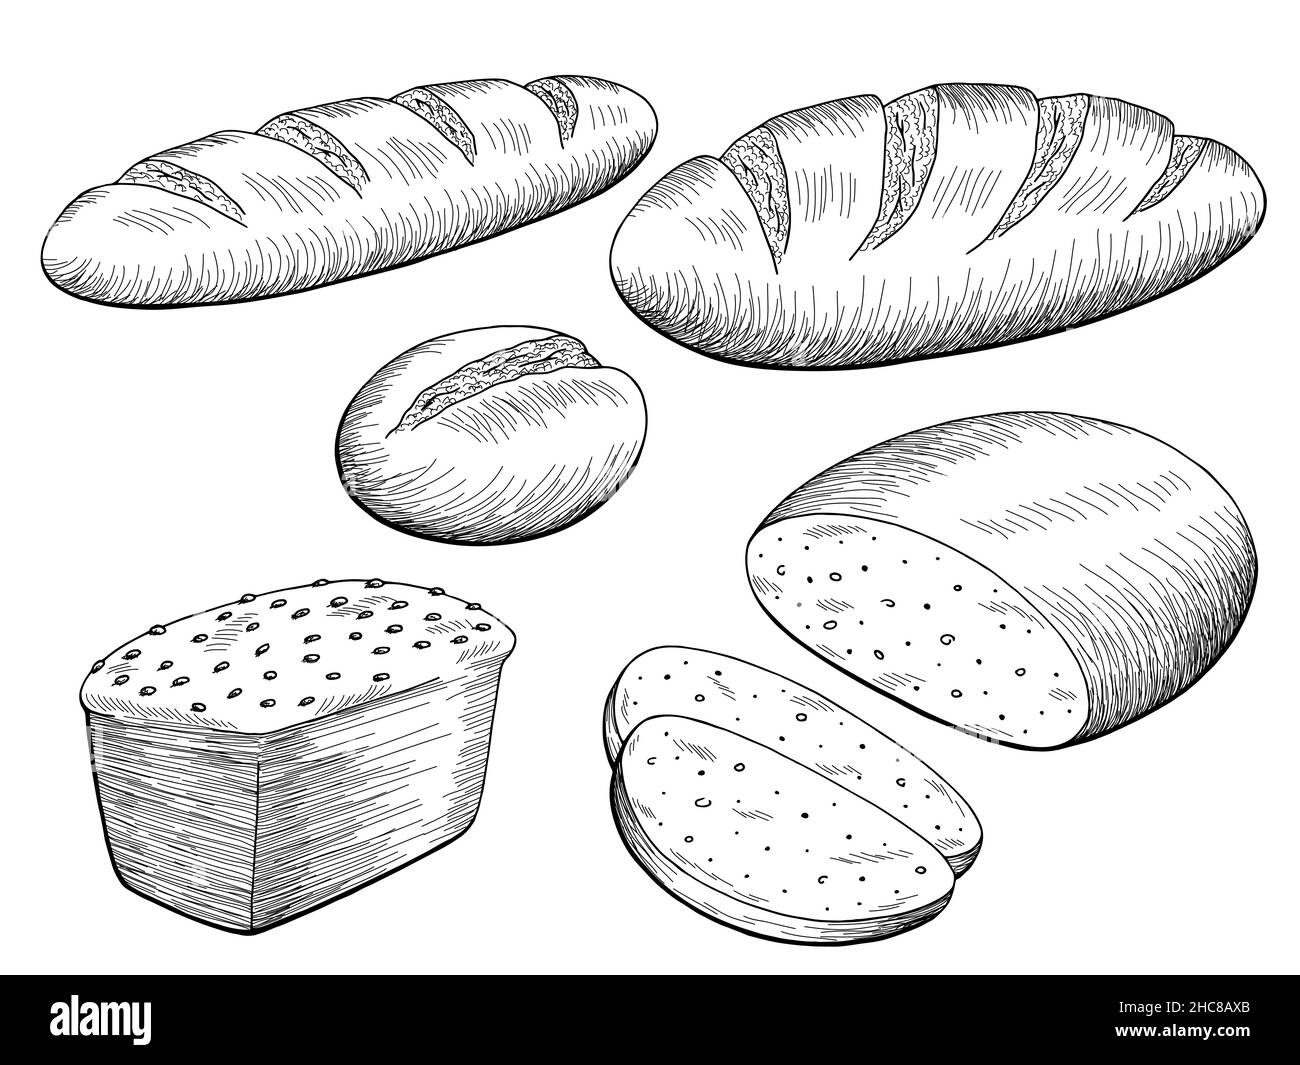 Brot Set Grafik schwarz weiß isoliert Lebensmittel Skizze Illustration Vektor Stock Vektor